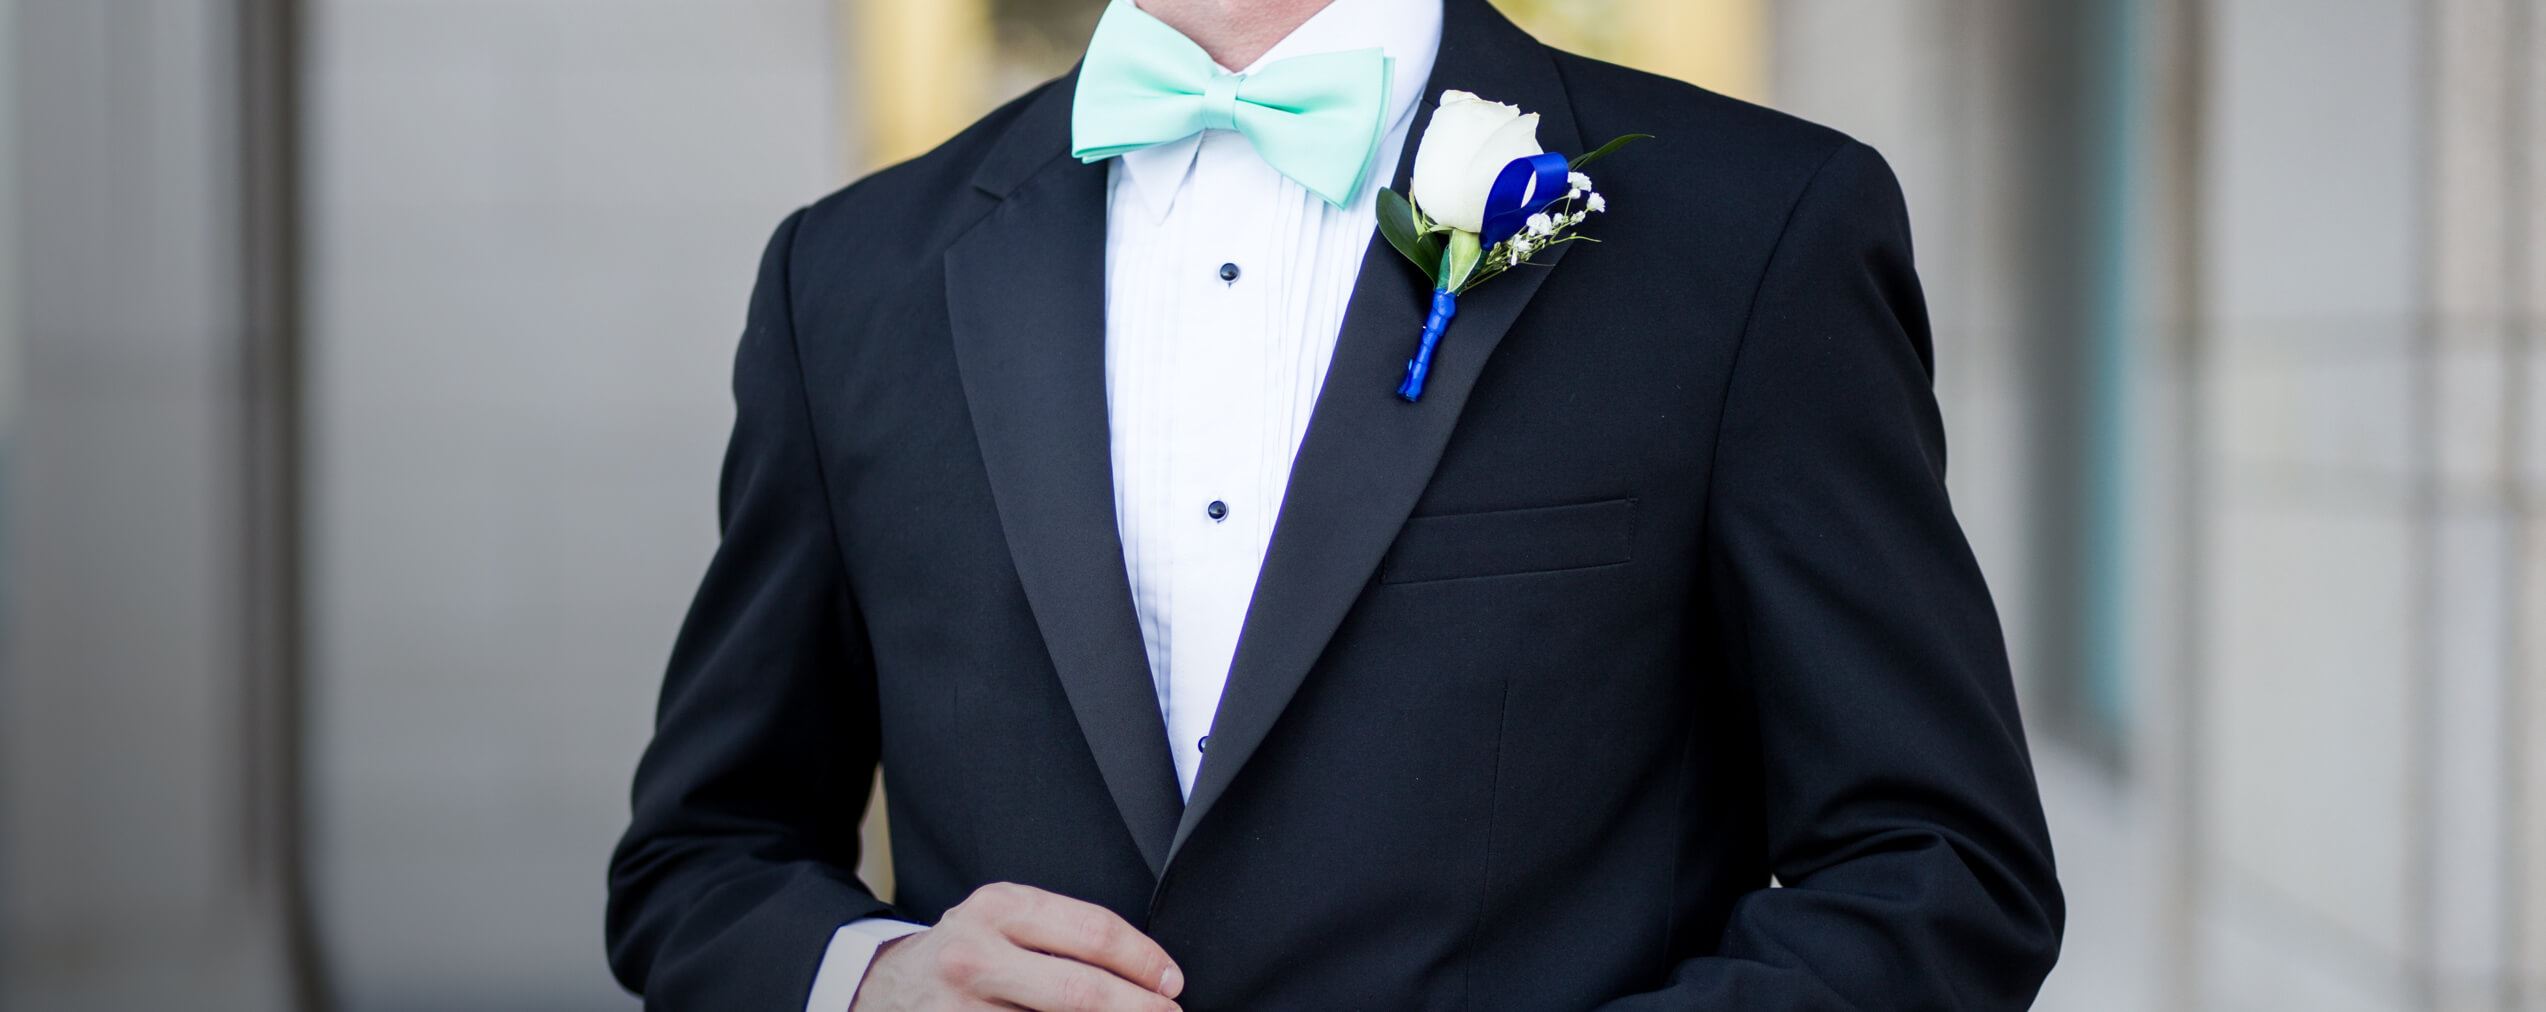 Male model wearing black tuxedo and mint blue bow tie on desktop